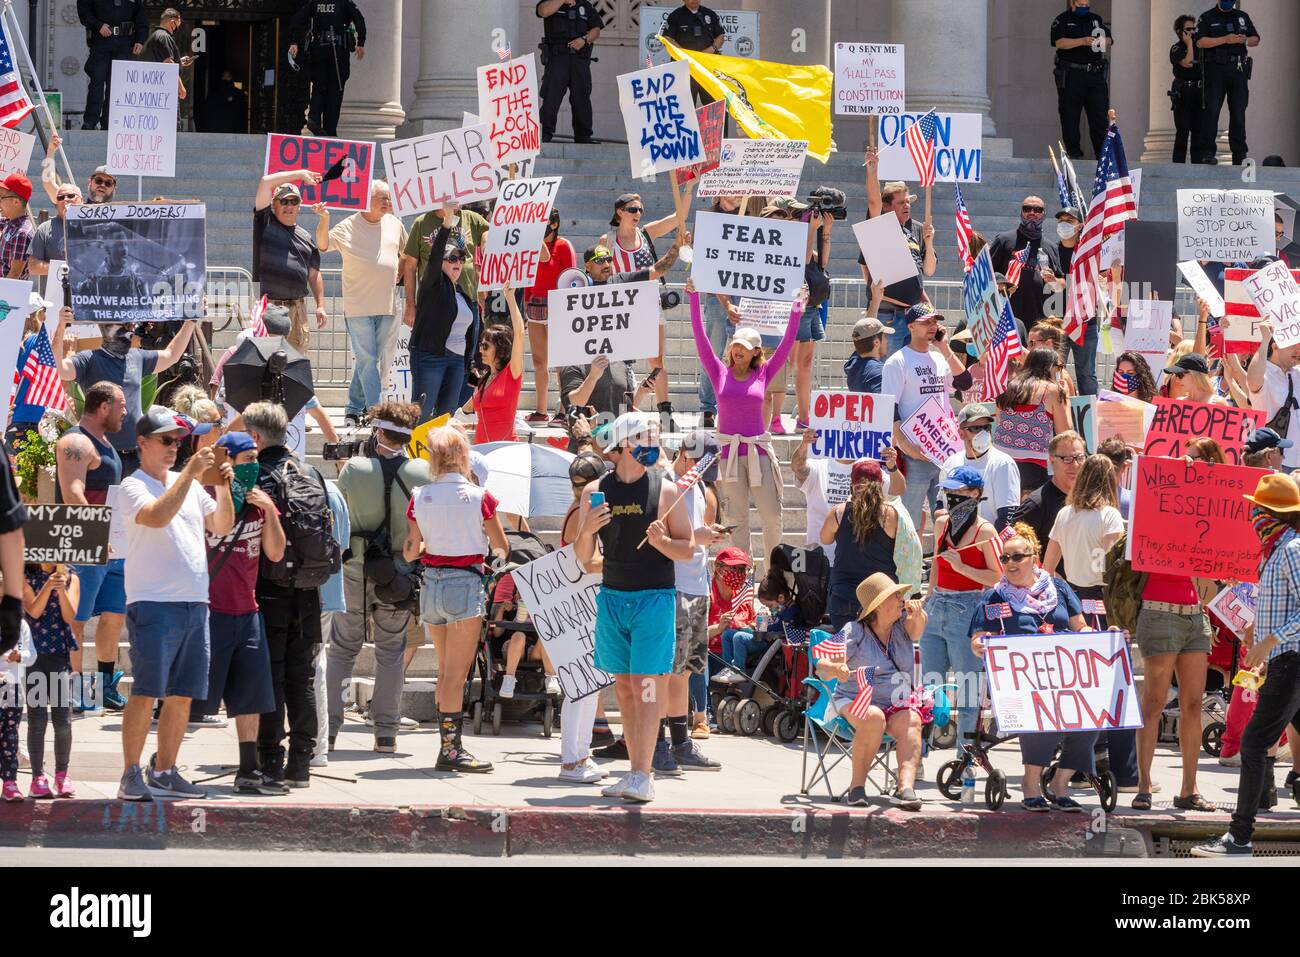 Los manifestantes protestando permanecen en orden en el Ayuntamiento, los Ángeles, California, el 1 de mayo de 2020. Foto de stock